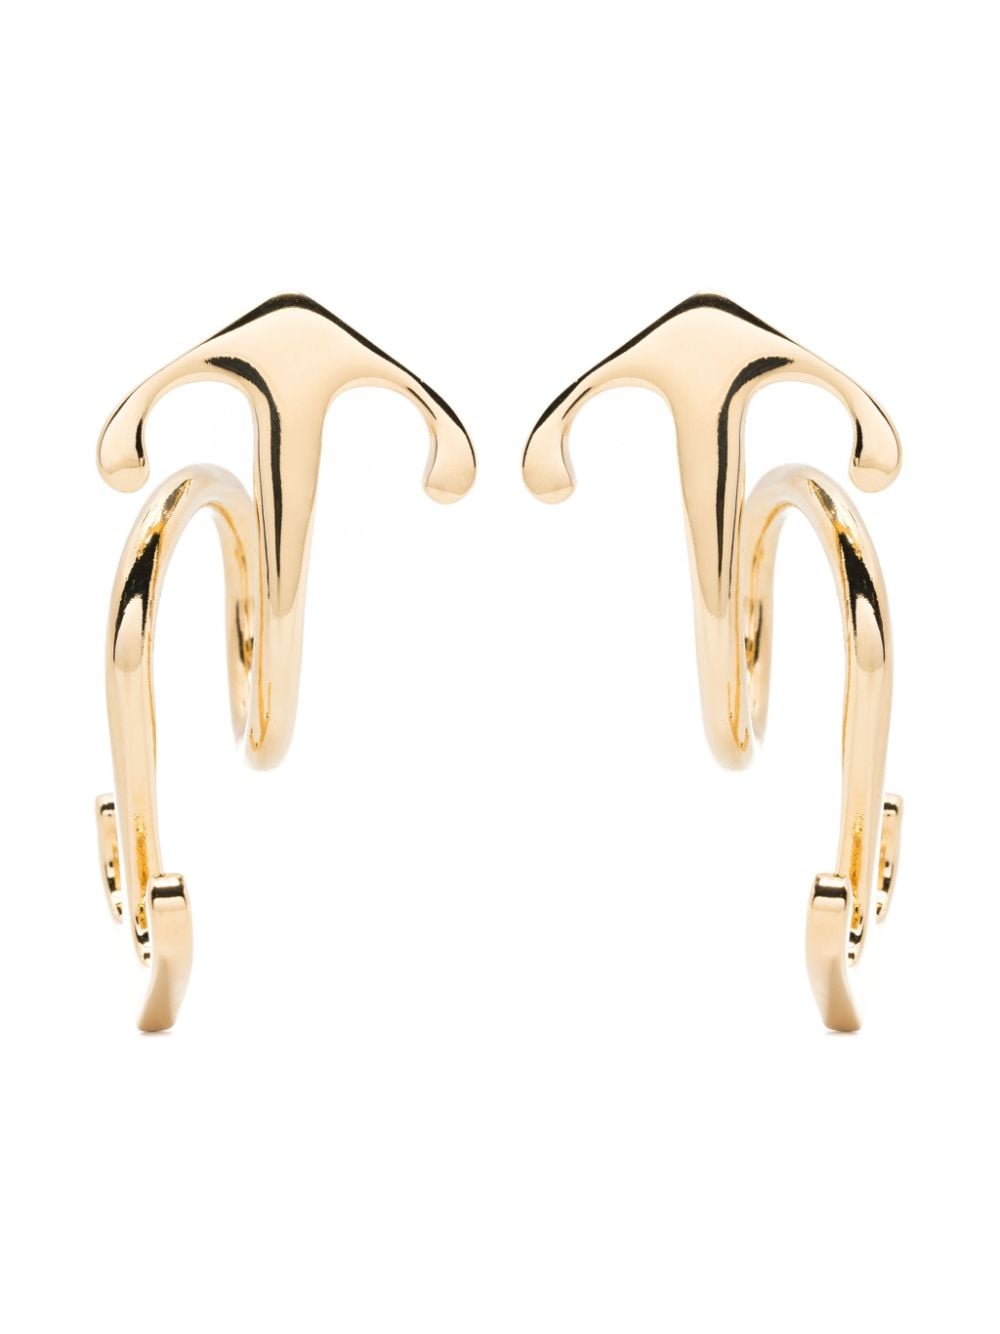 Arrows-motif earrings